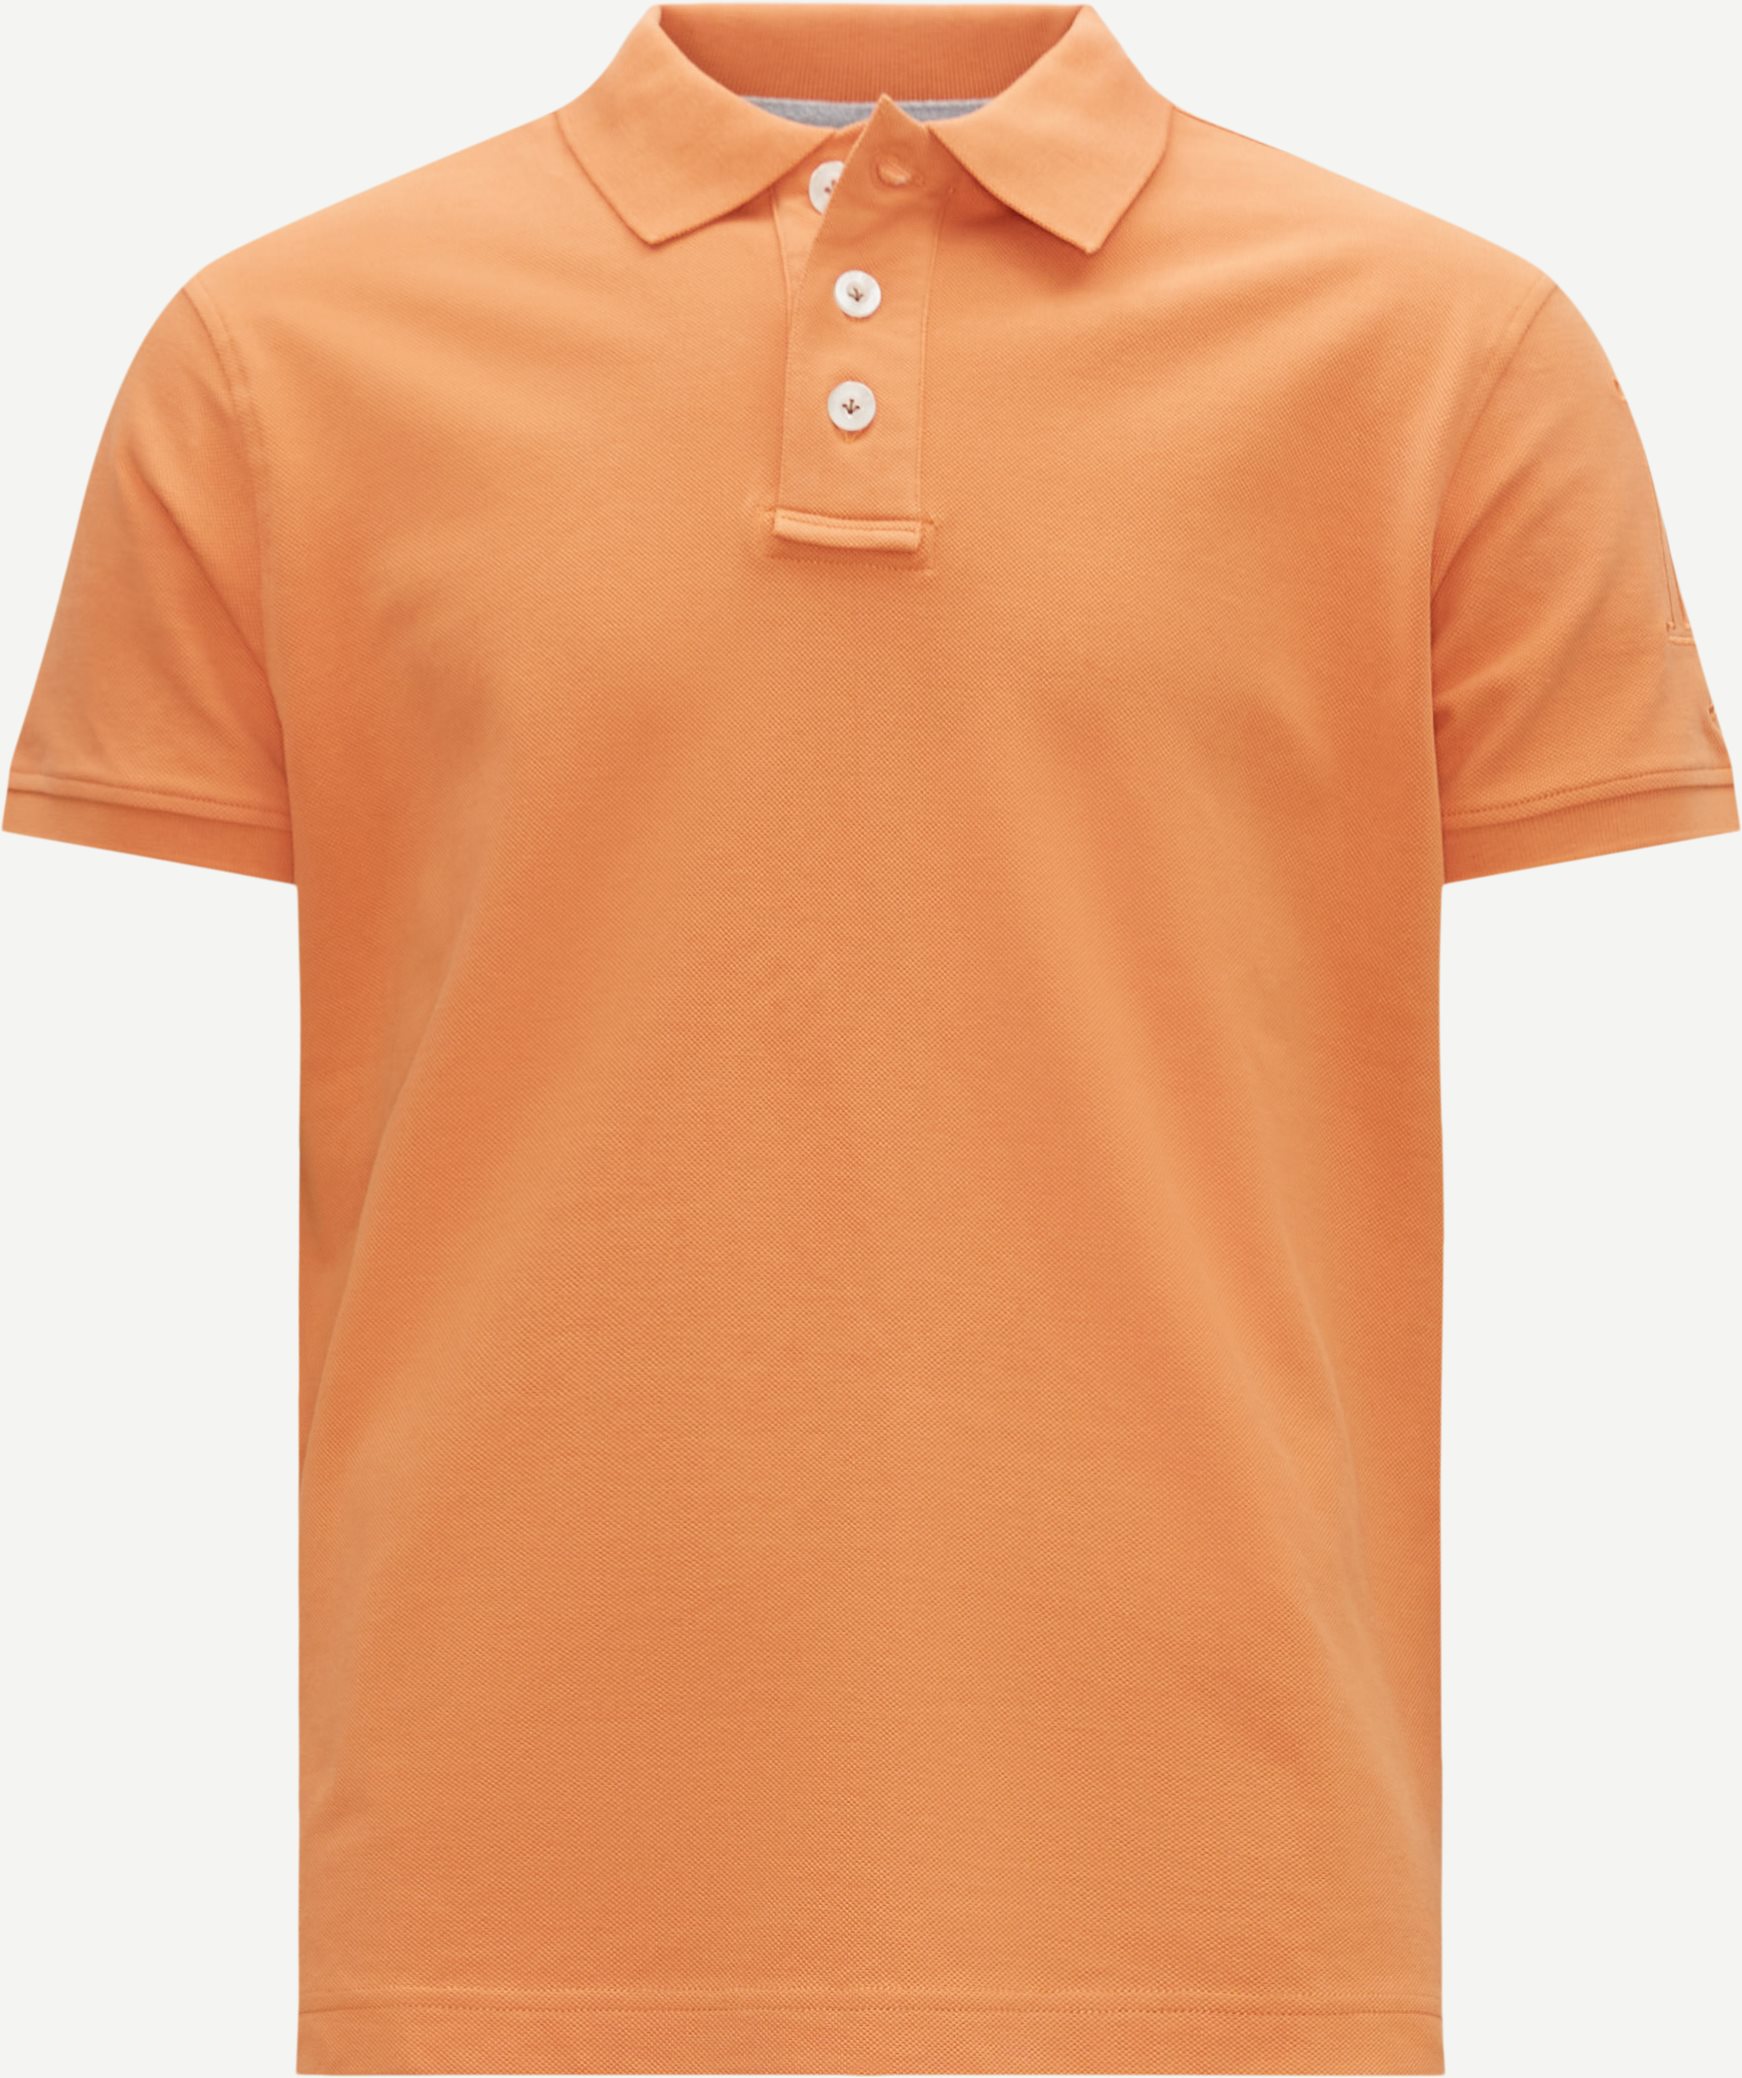 Hansen & Jacob T-shirts 11434 ROUGH STYLE POLO  Orange